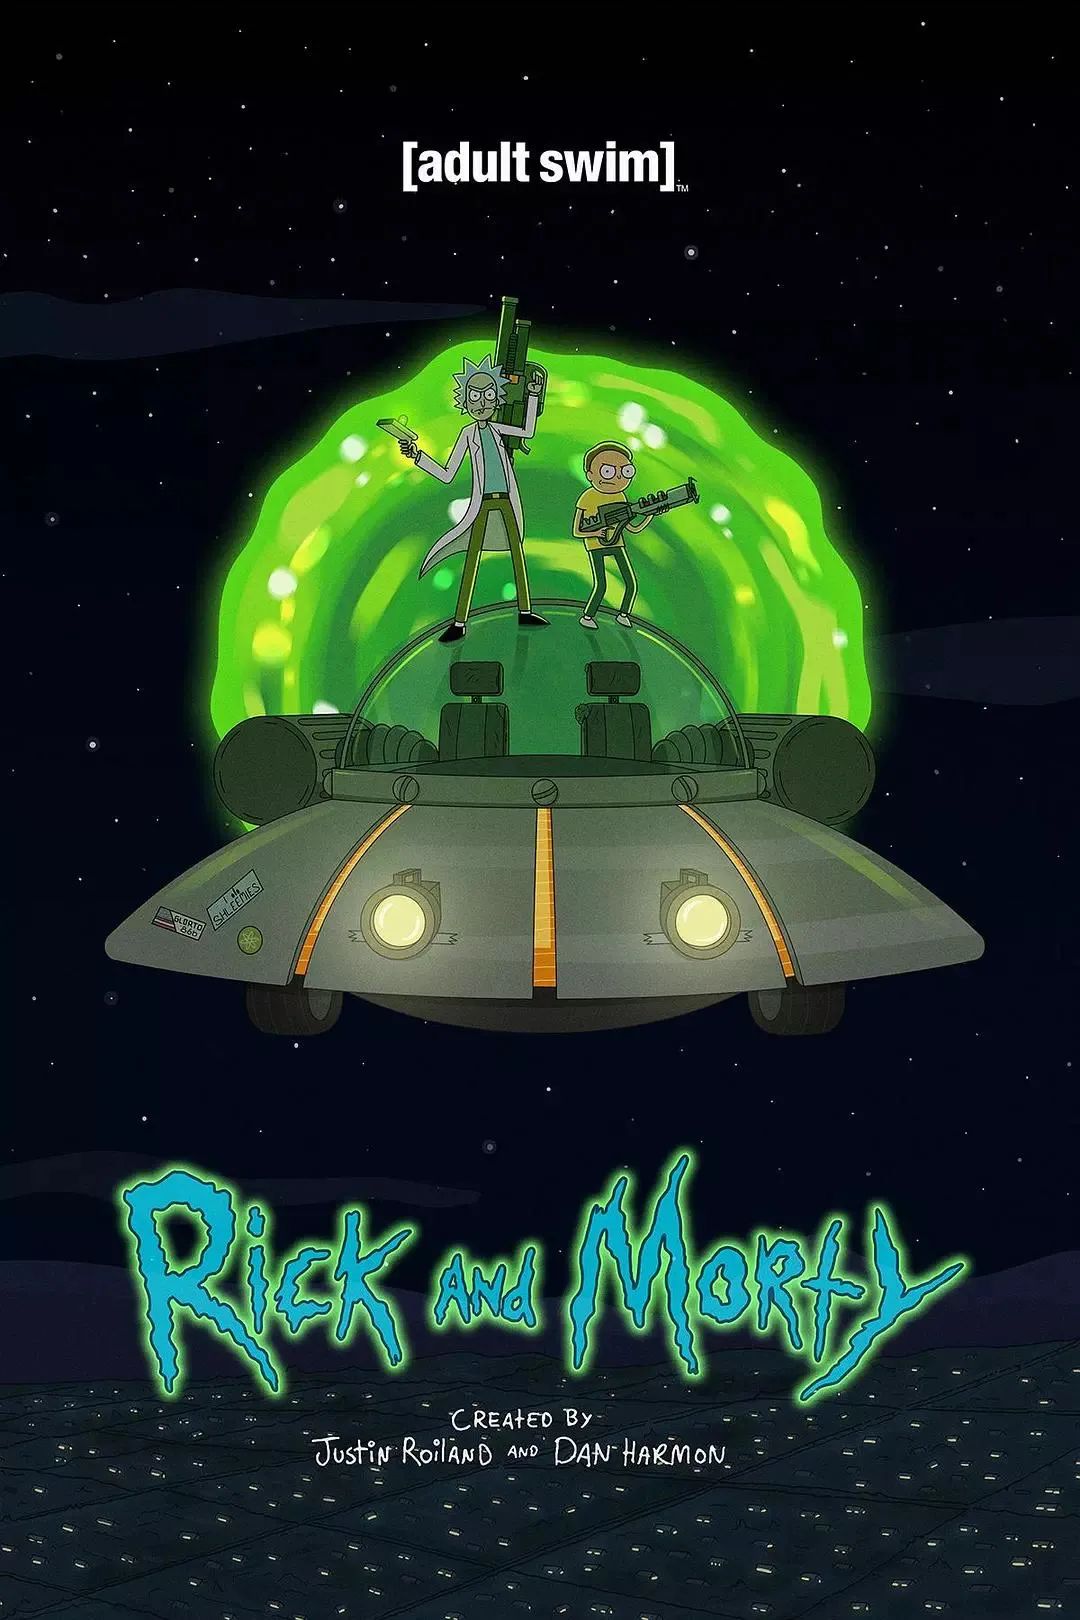 瑞克和莫蒂 Rick and Morty 动画-拓空间学习分享